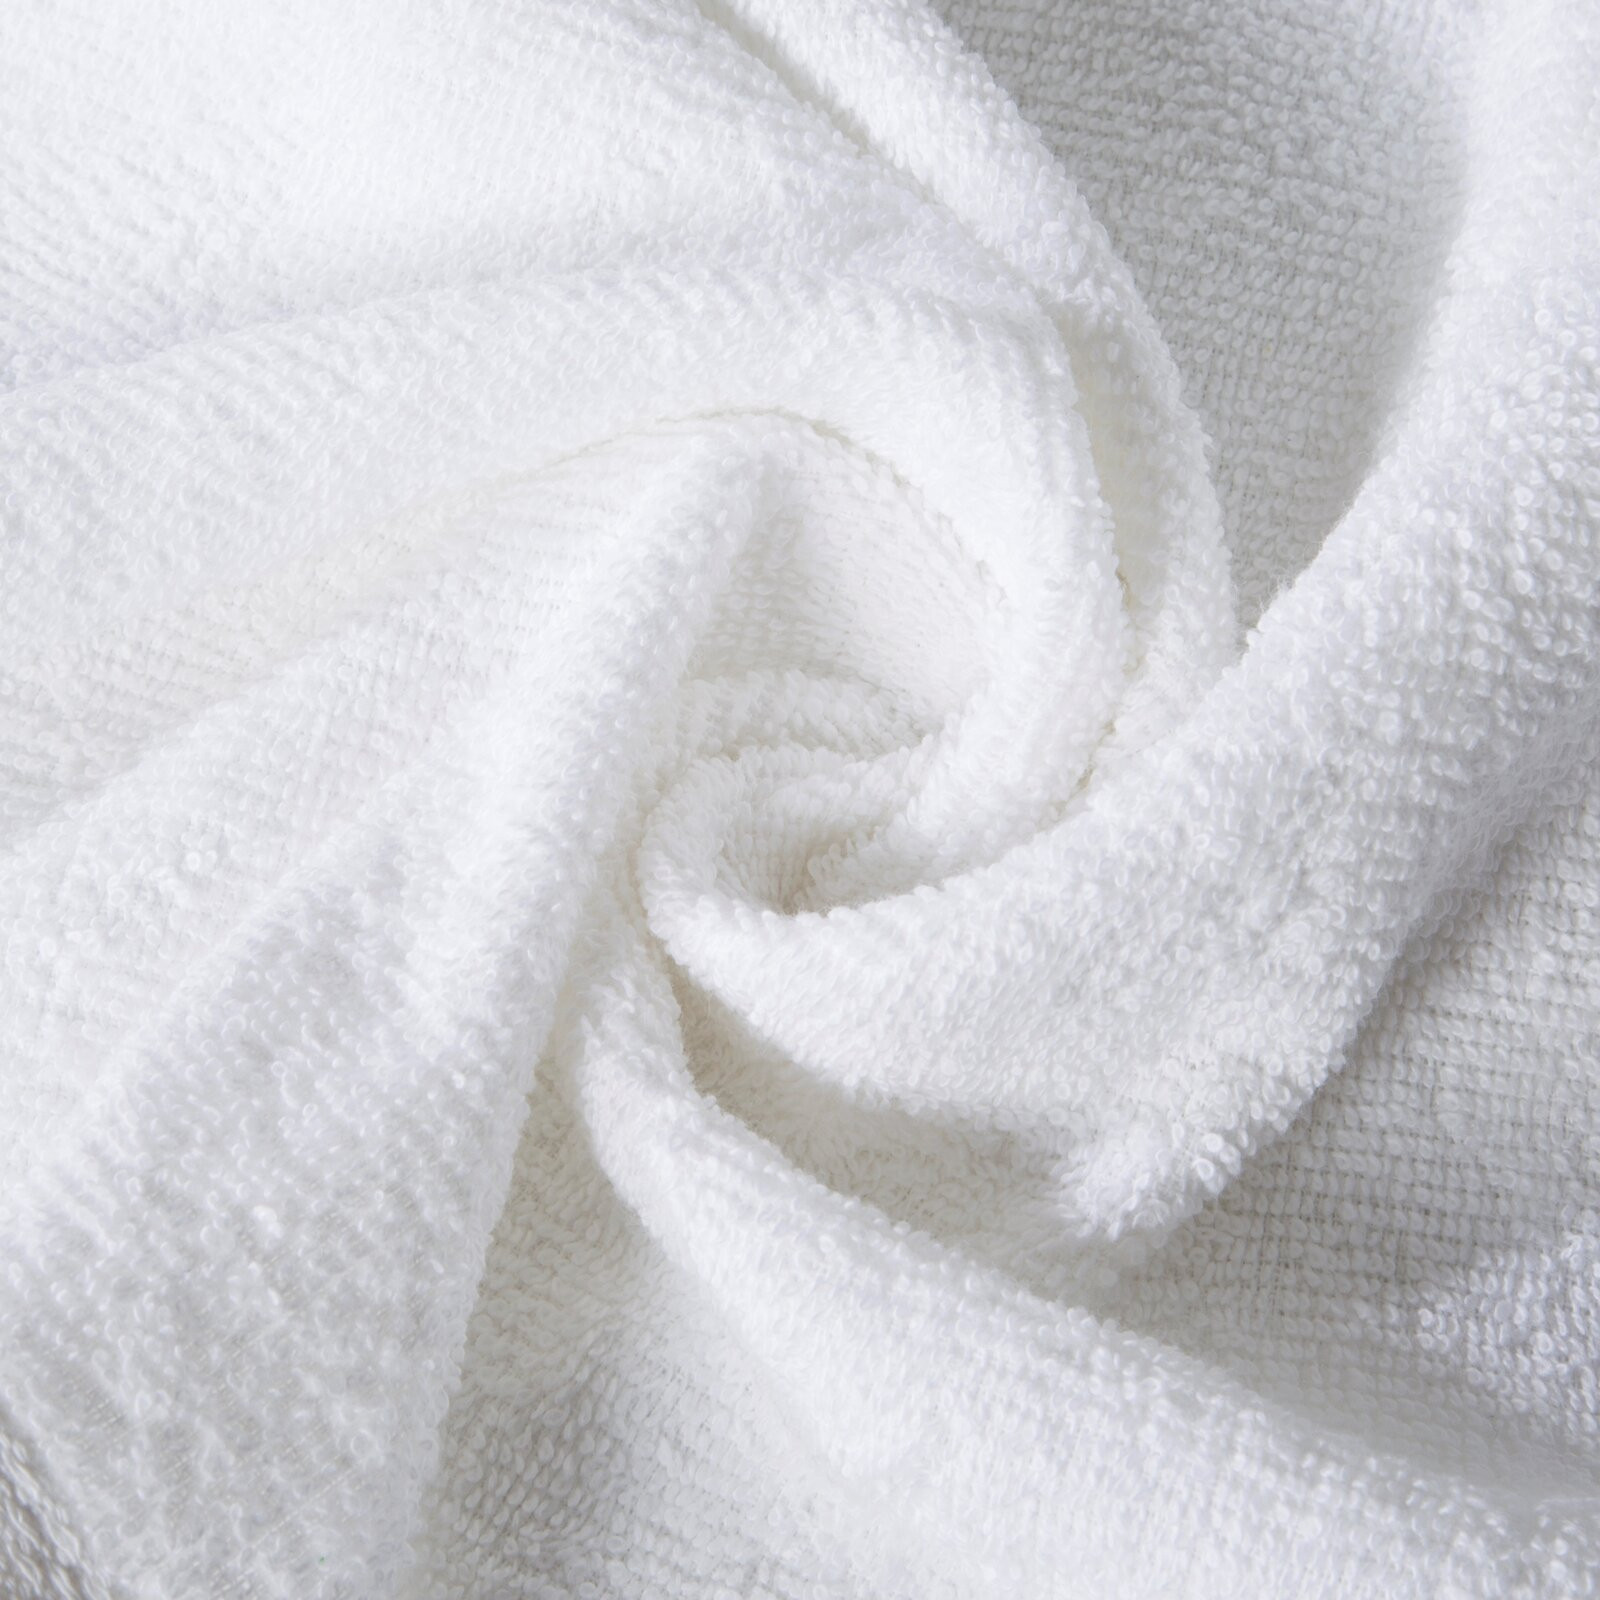 Sada ručníků GLADKI 1 01 bílá